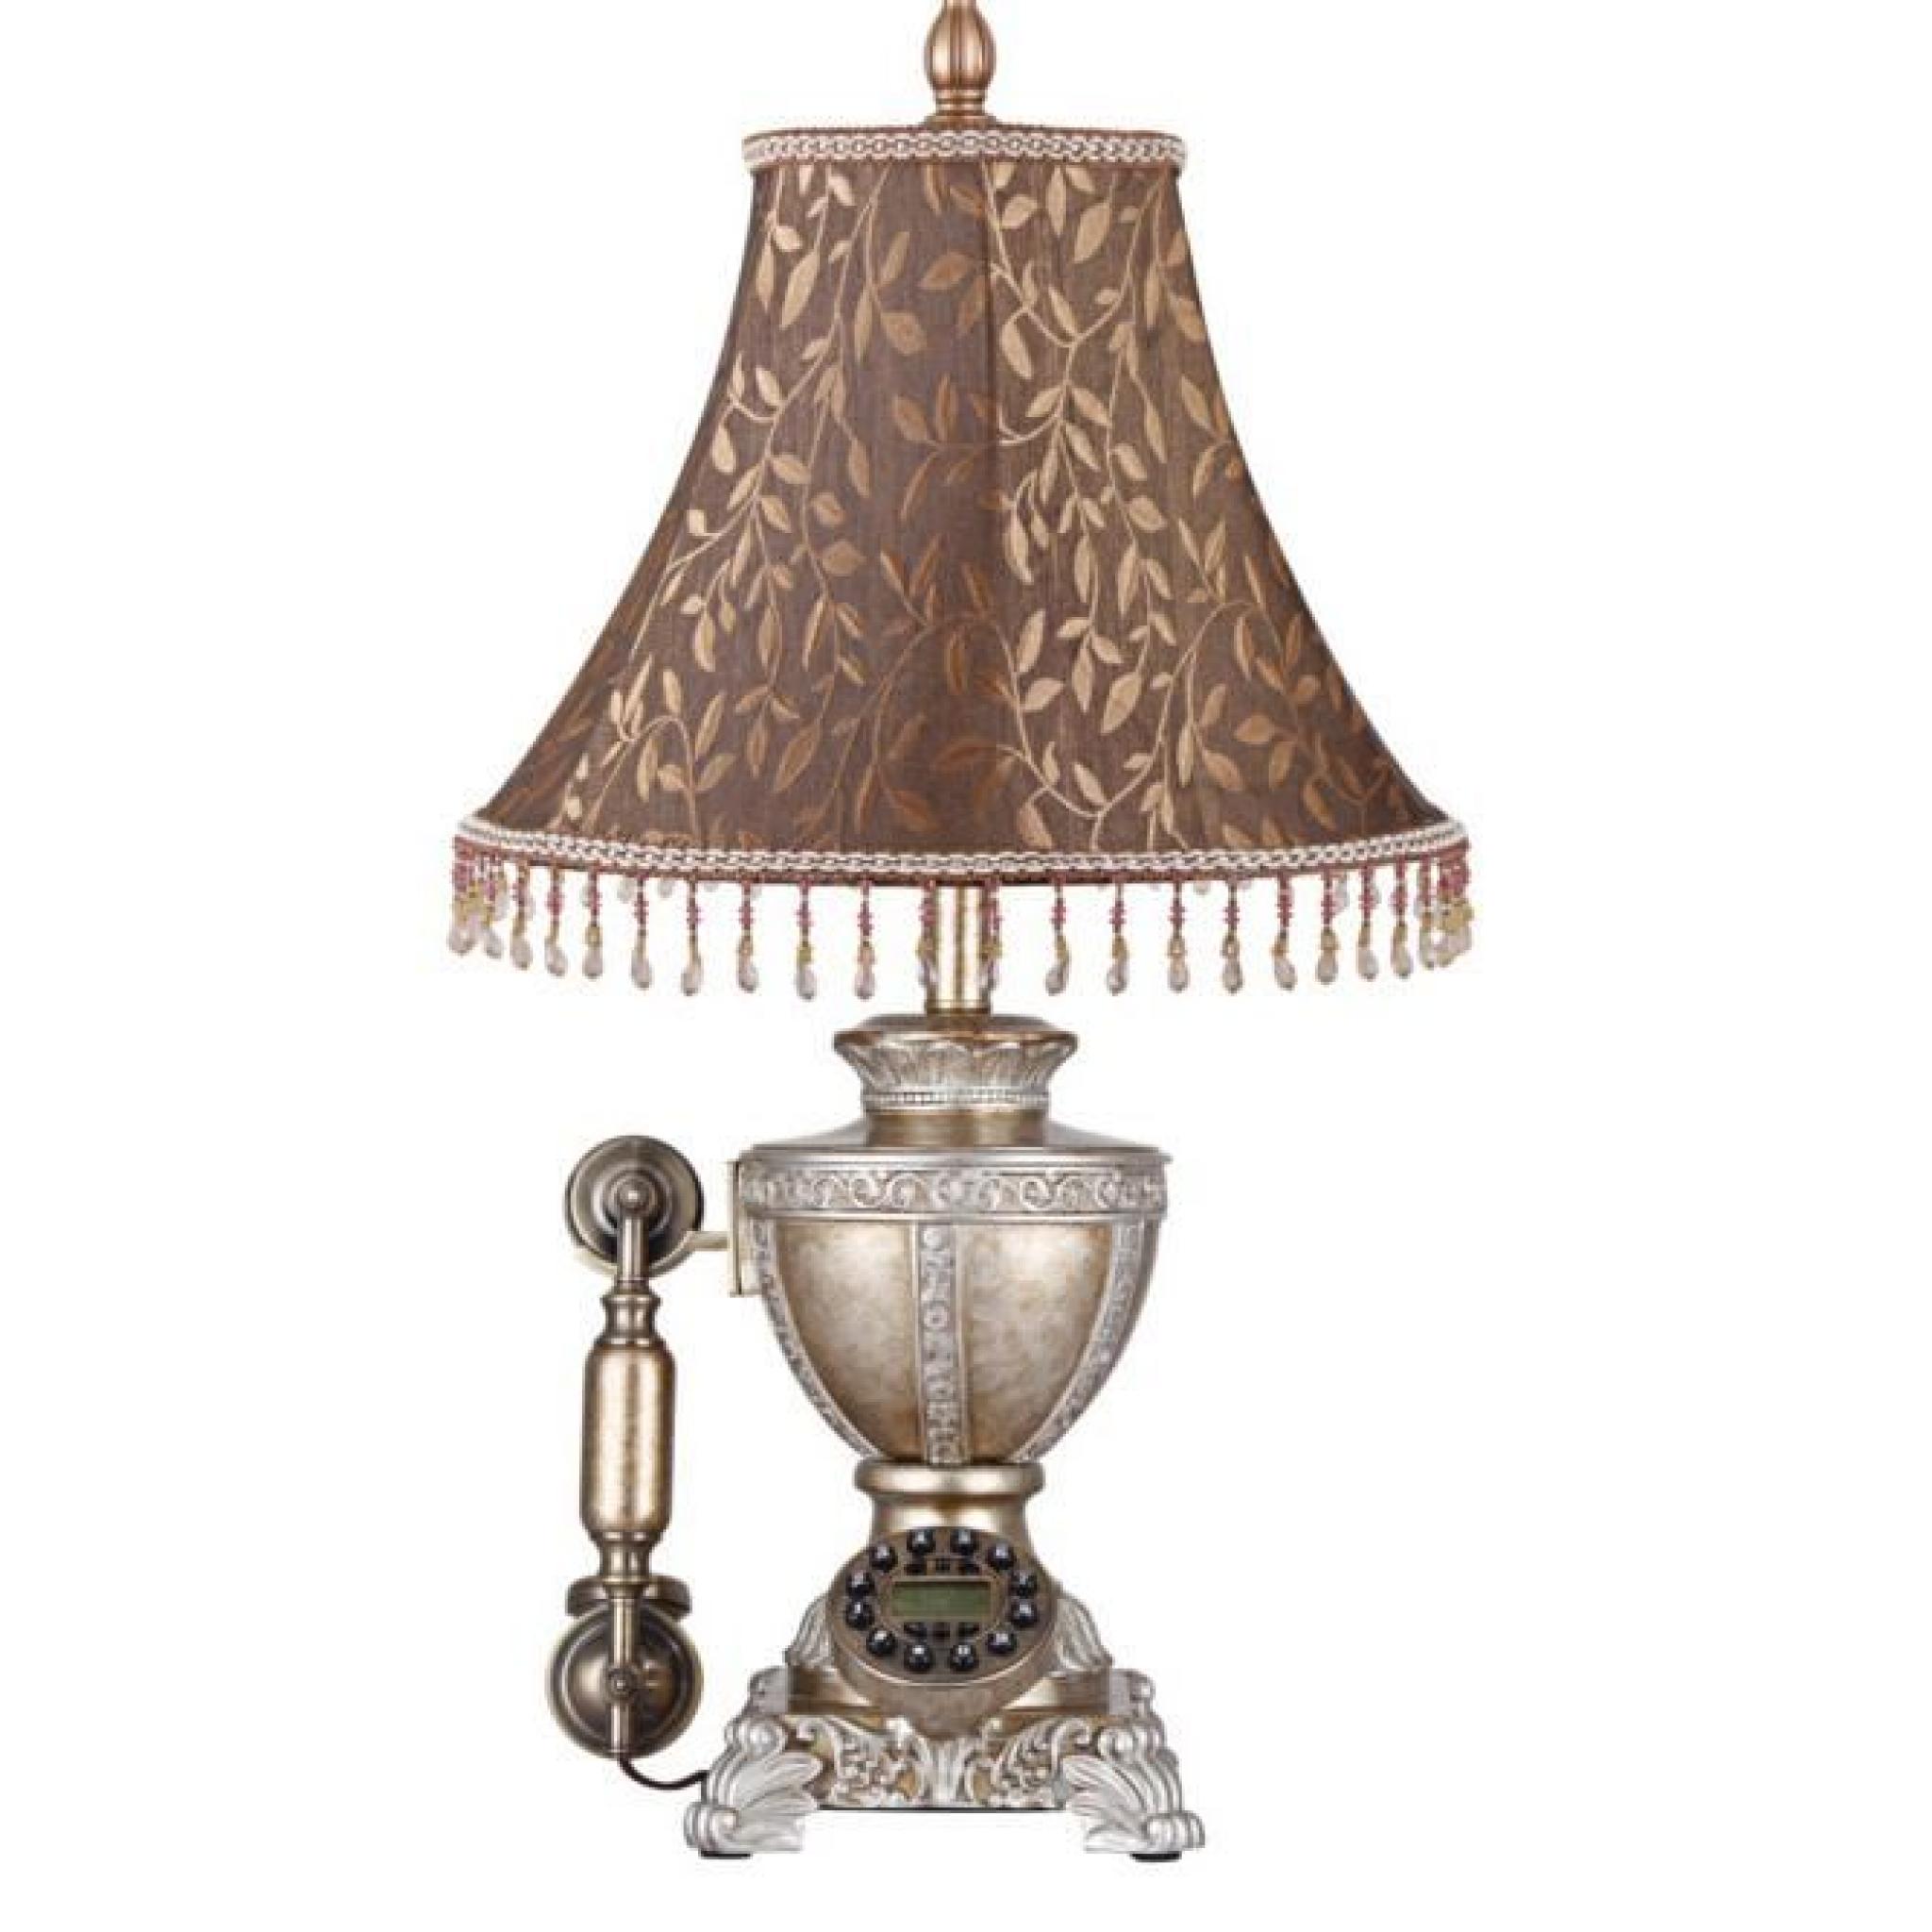 Luxueuse lampe de chevet téléphone victorien steampunk vintage chateau